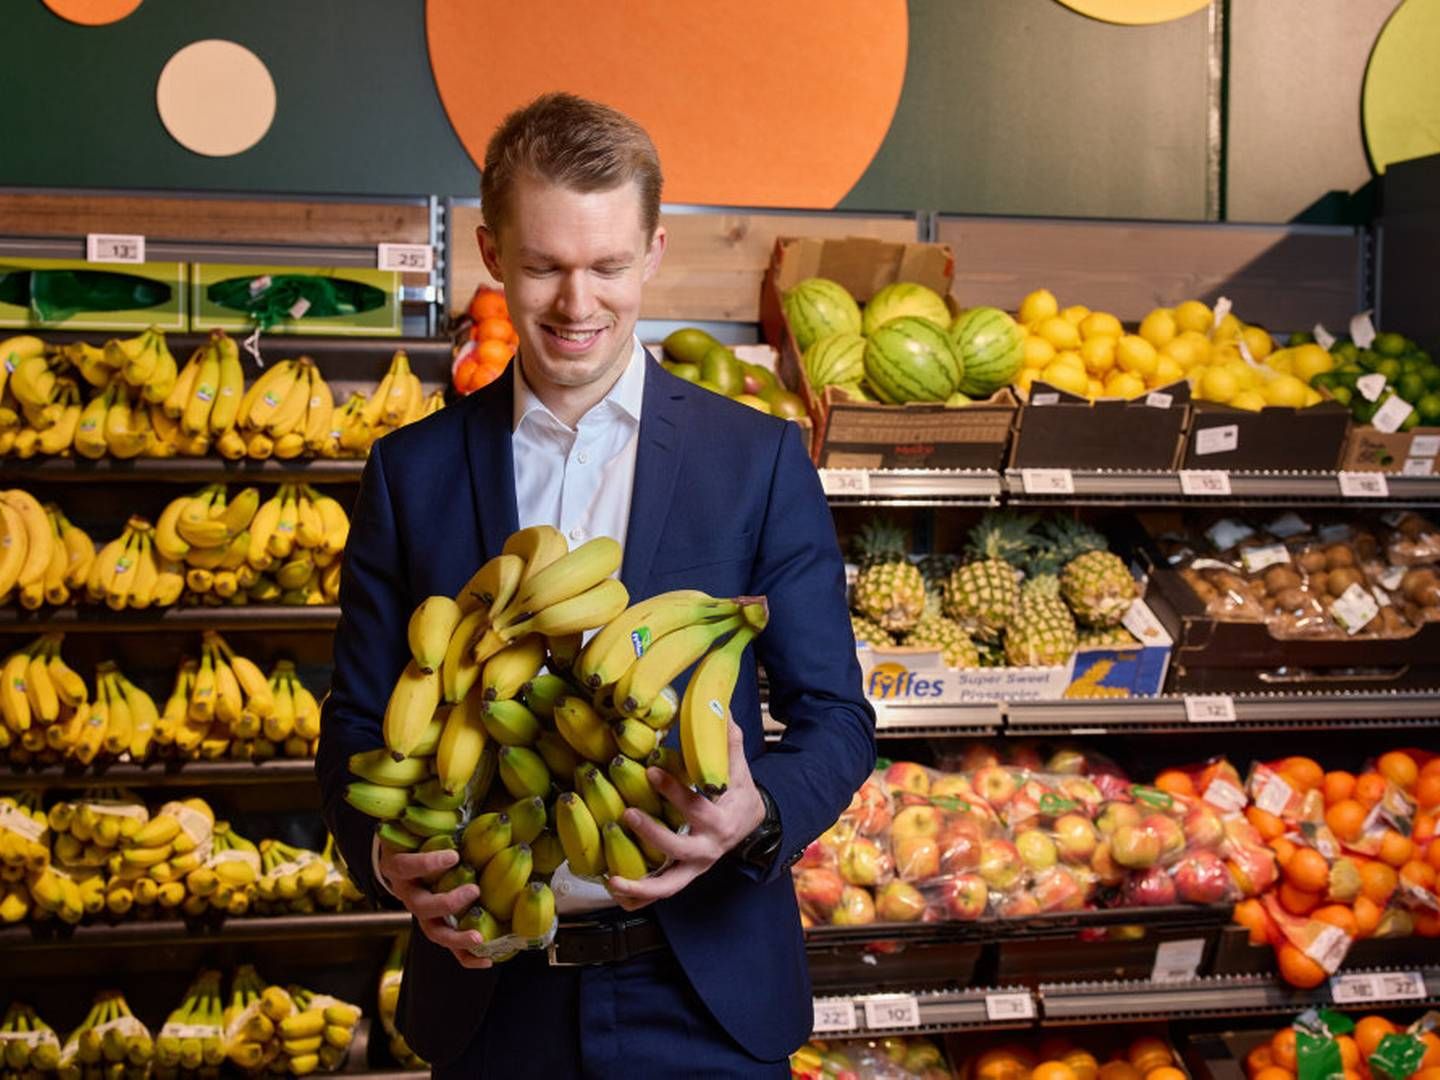 Michael Tilsted, kædedirektør for 365discount, fortæller, at det ville være for dyrt at sænke priserne på frugt og grønt permanent. Han åbner dog for andre løsninger. | Foto: Coop / Pr